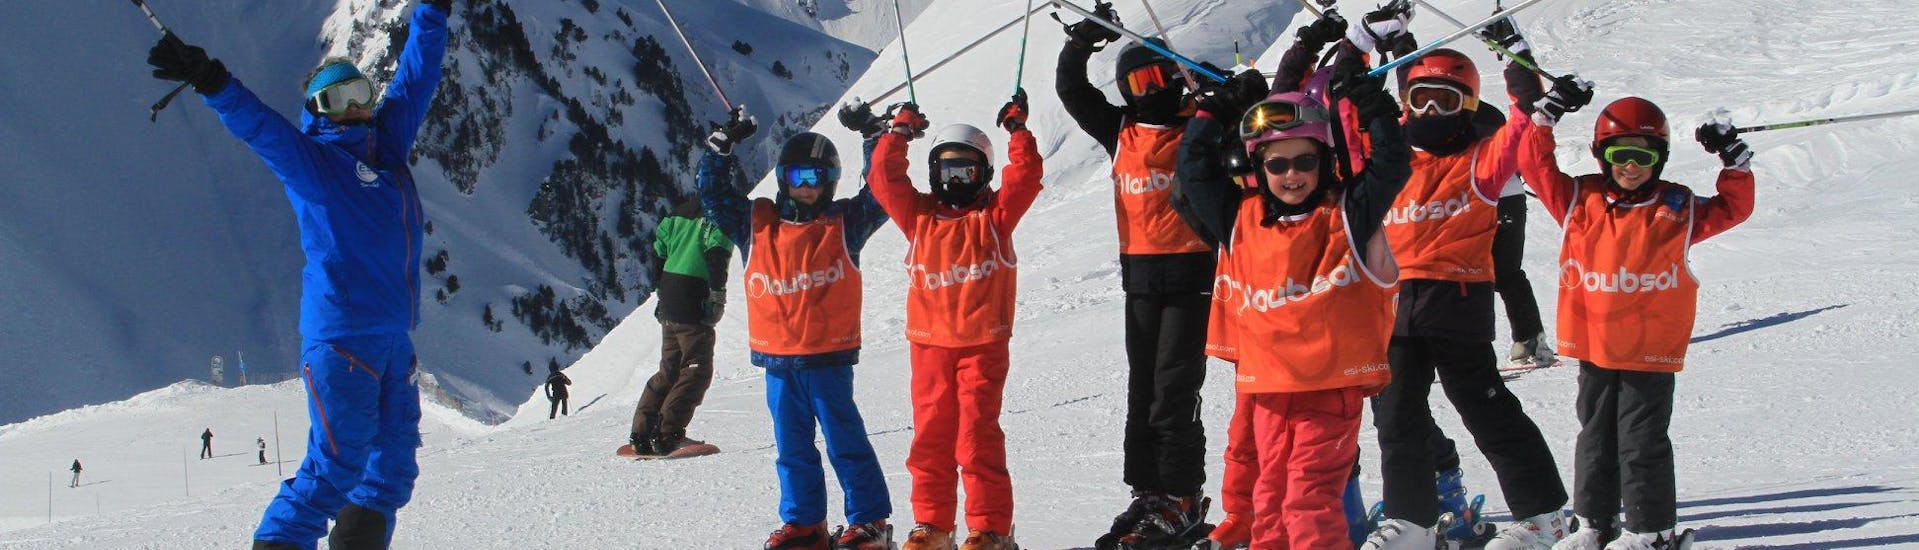 Kinder-Skikurs ab 5 Jahren mit Erfahrung.